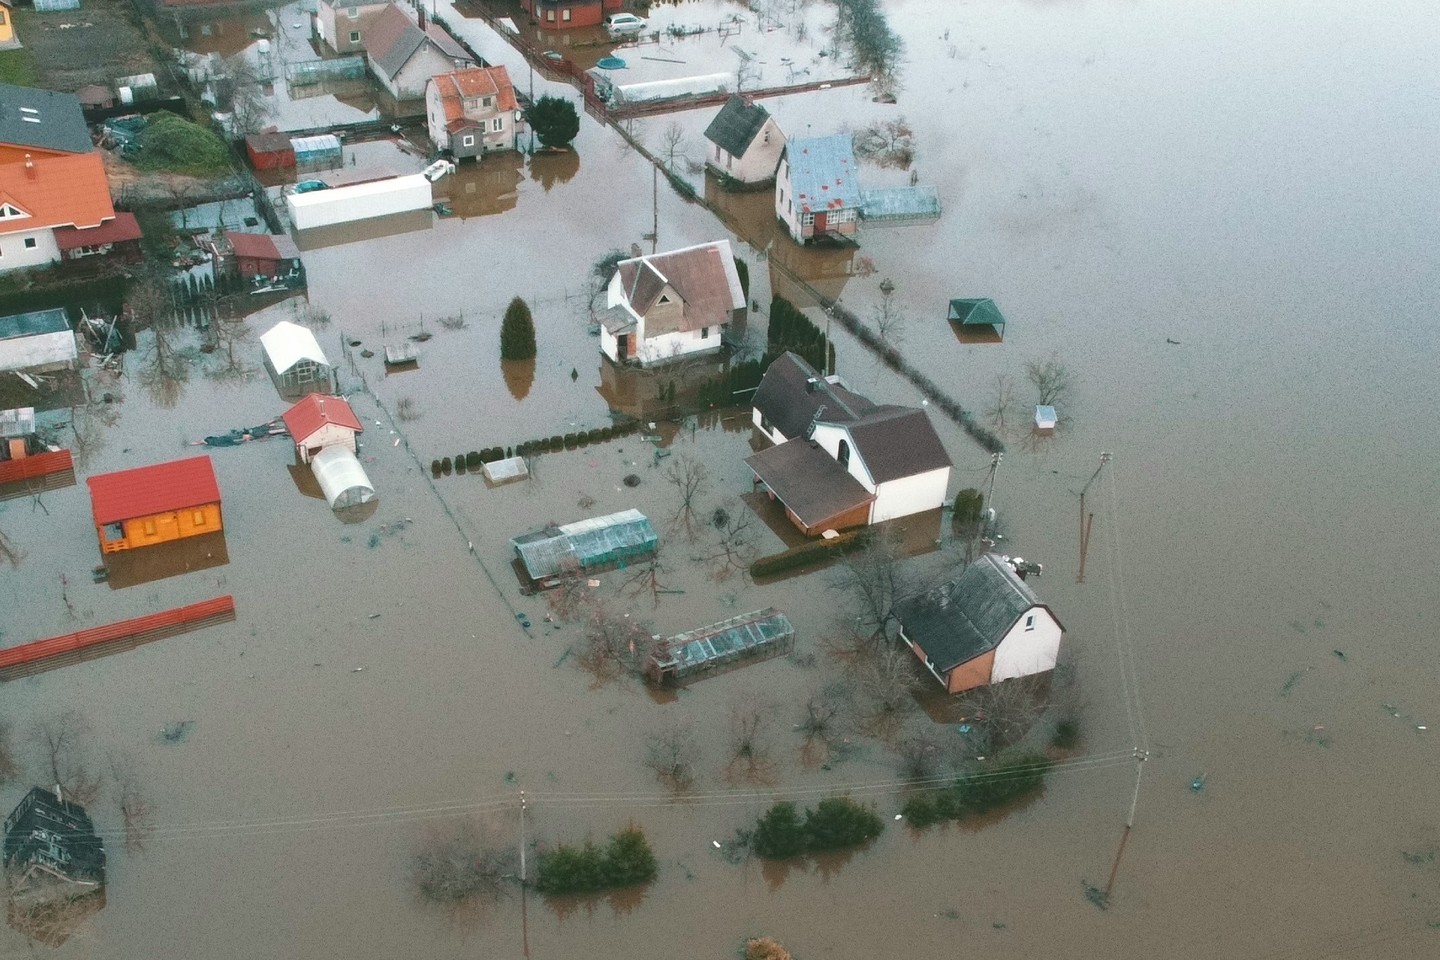  Purmalių miestelis, esantis šalia Klaipėdos, kenčia nuo potvynio. <br> R. Žalgevičiaus nuotr.